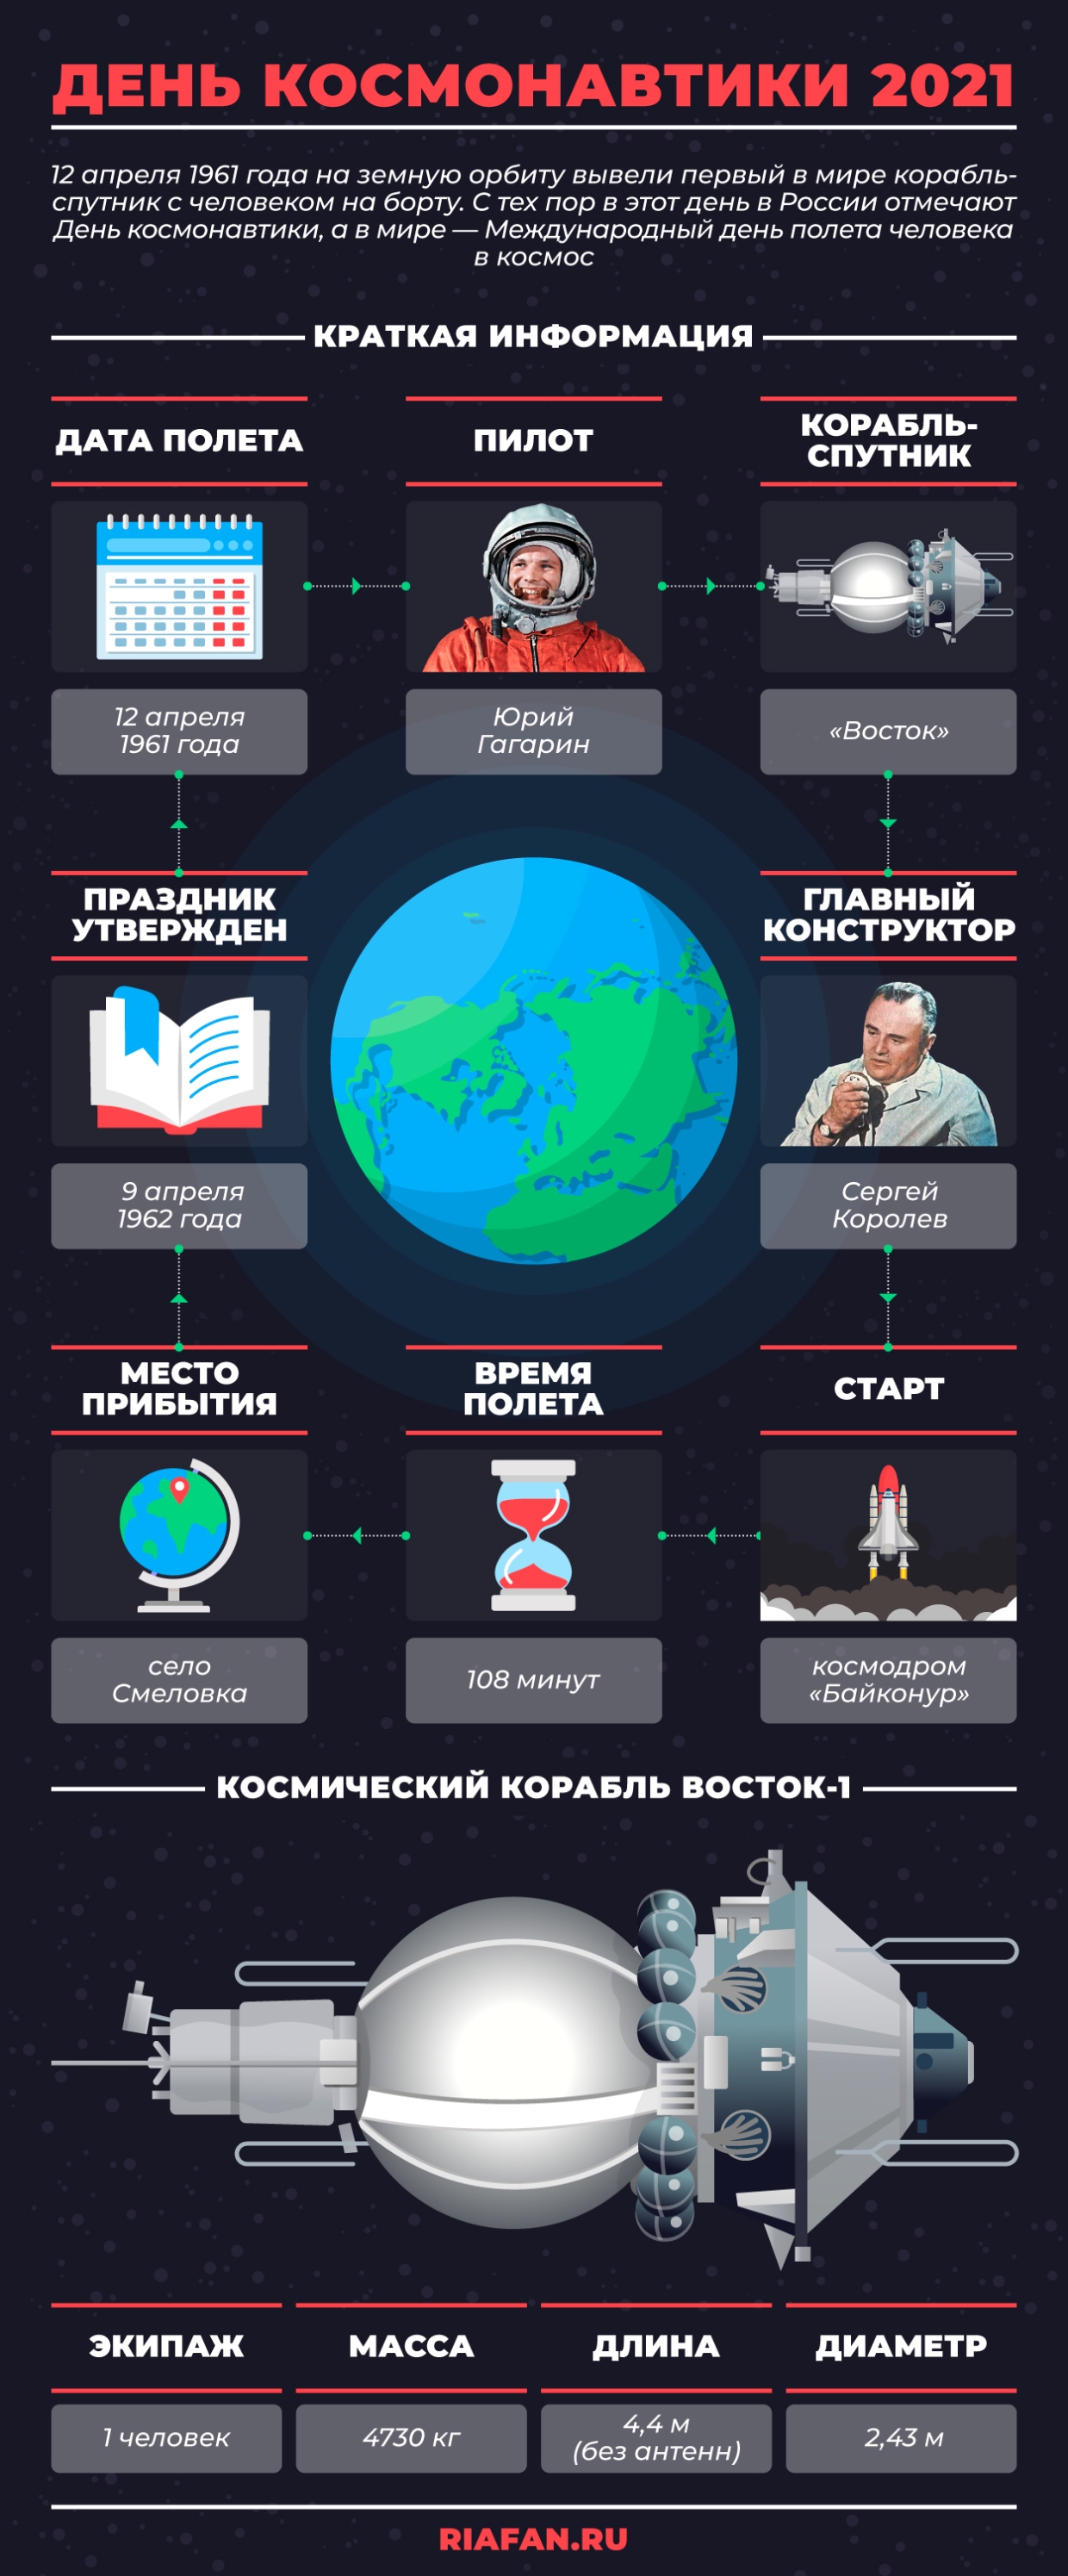 Тайна шрама Юрия Гагарина, и от чего умер Сергей Королев